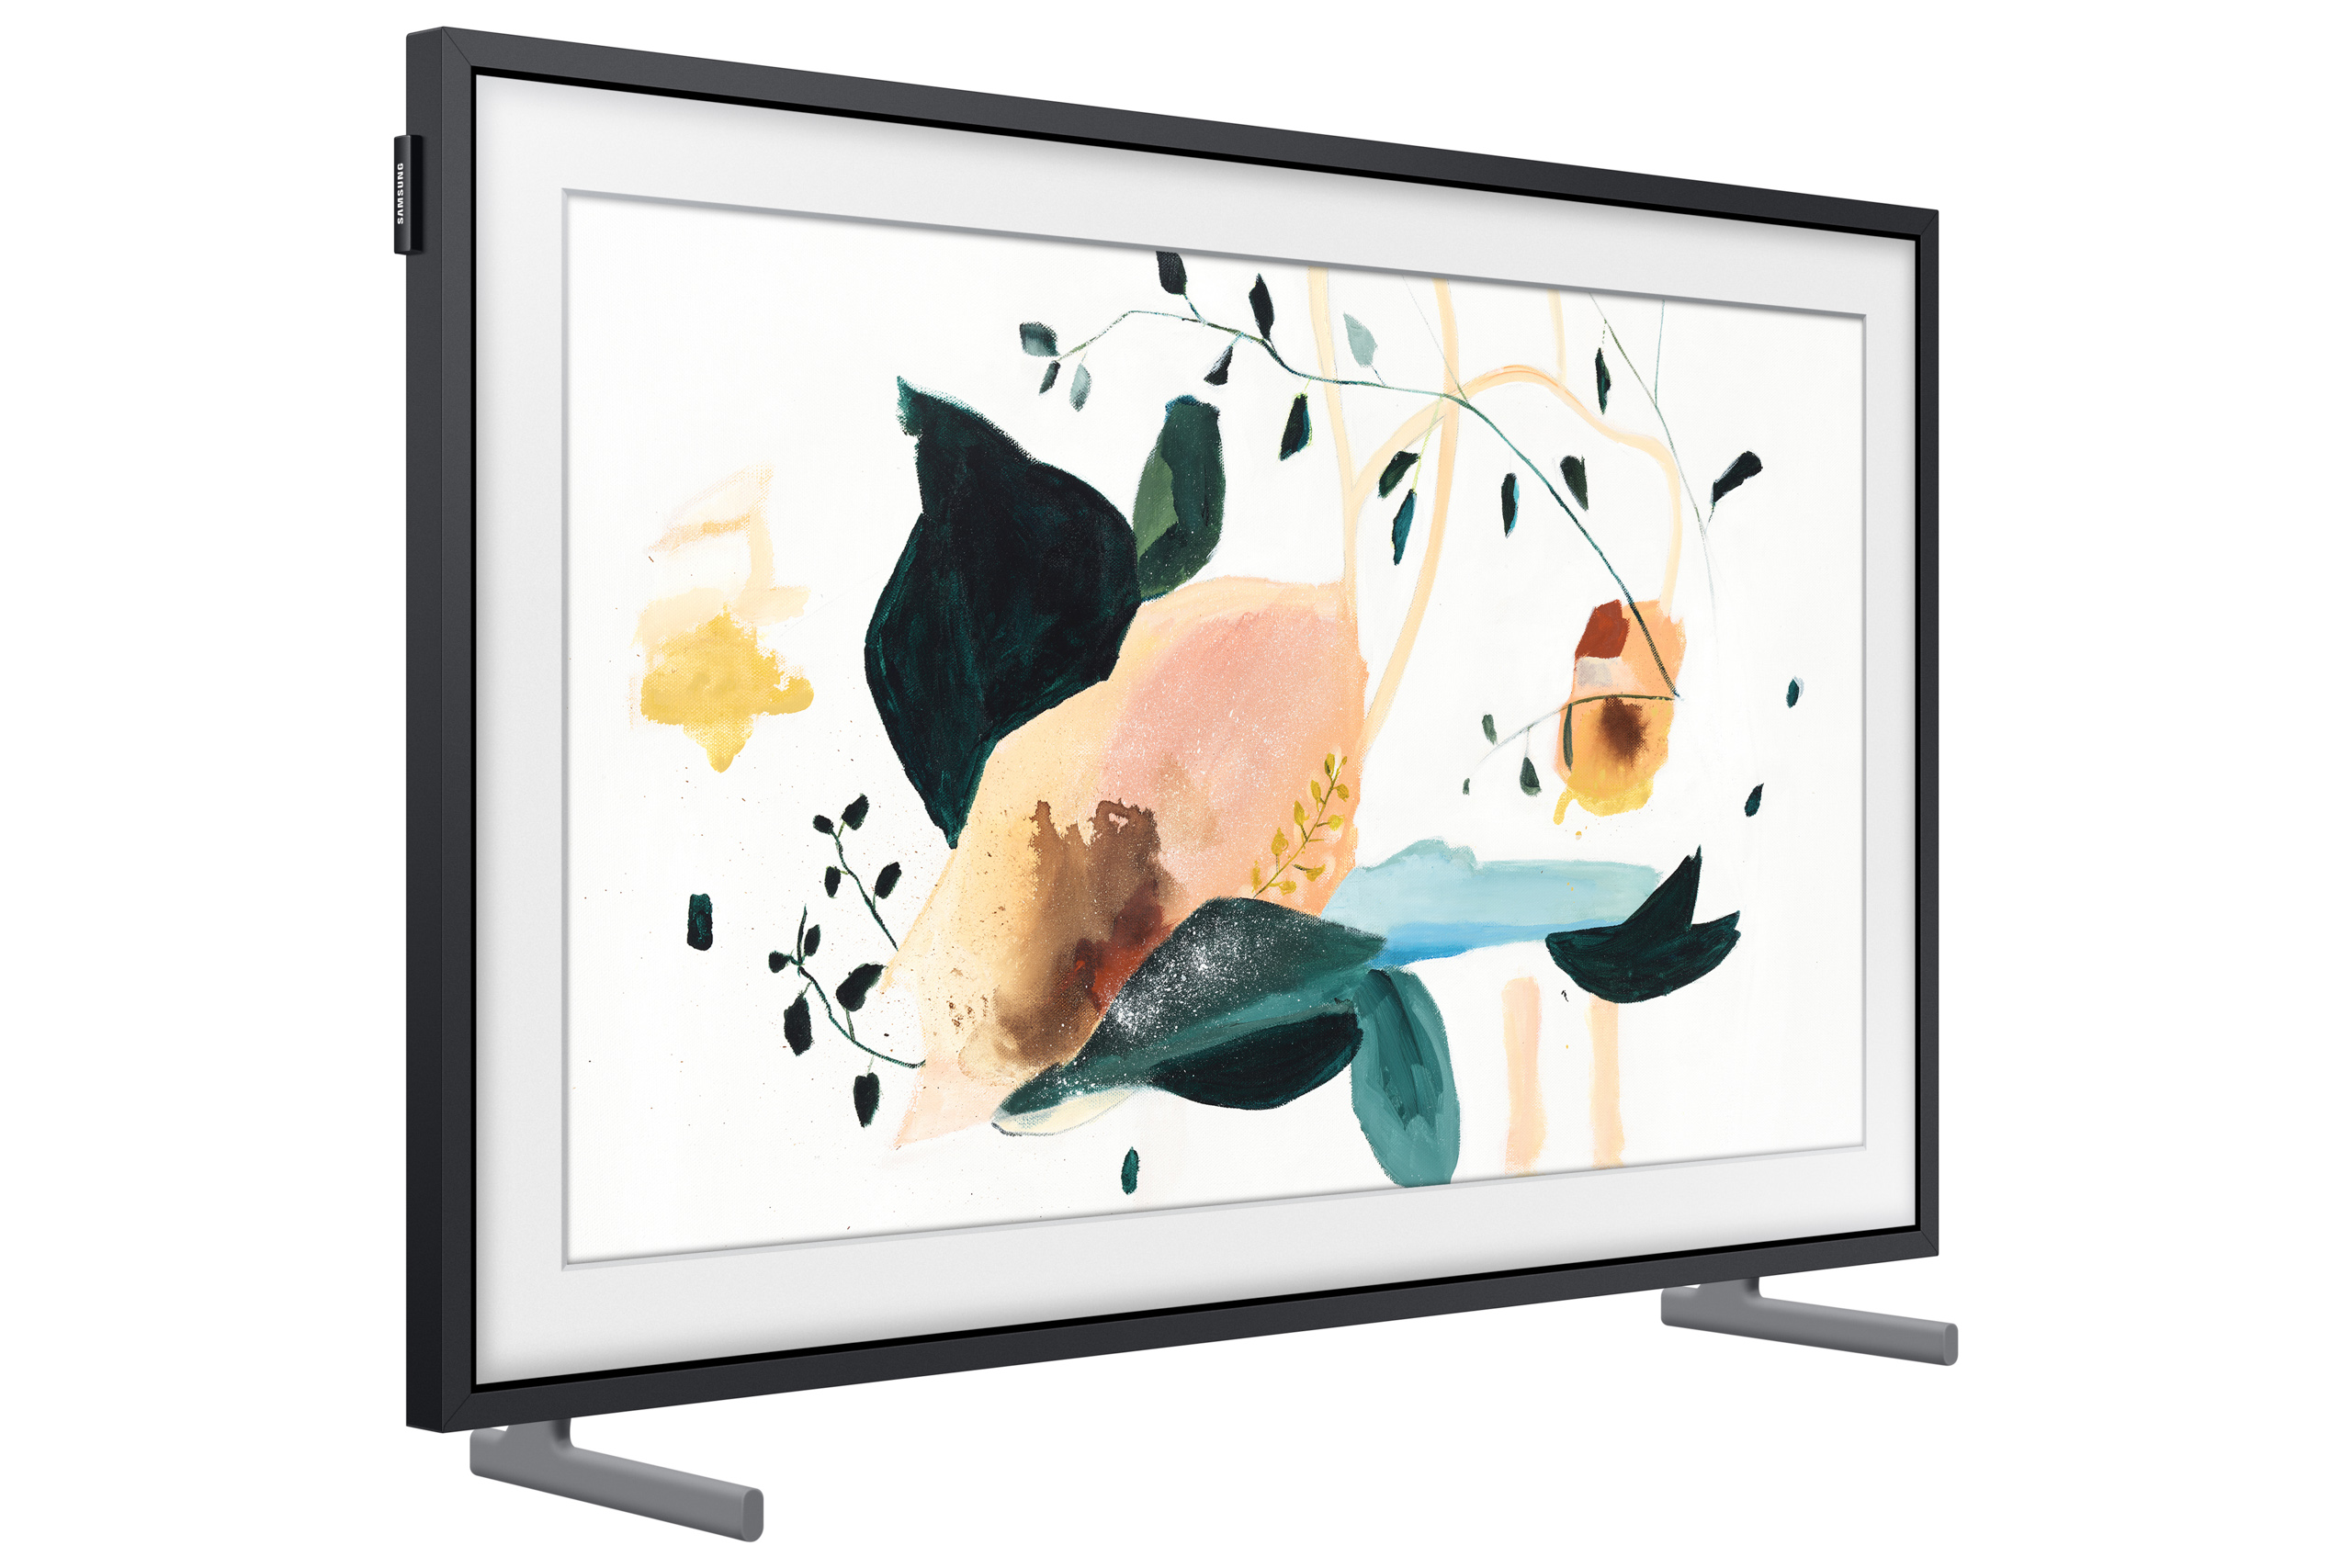 Samsung ra mắt TV The Frame MINI phiên bản đặc biệt, giá 18 triệu